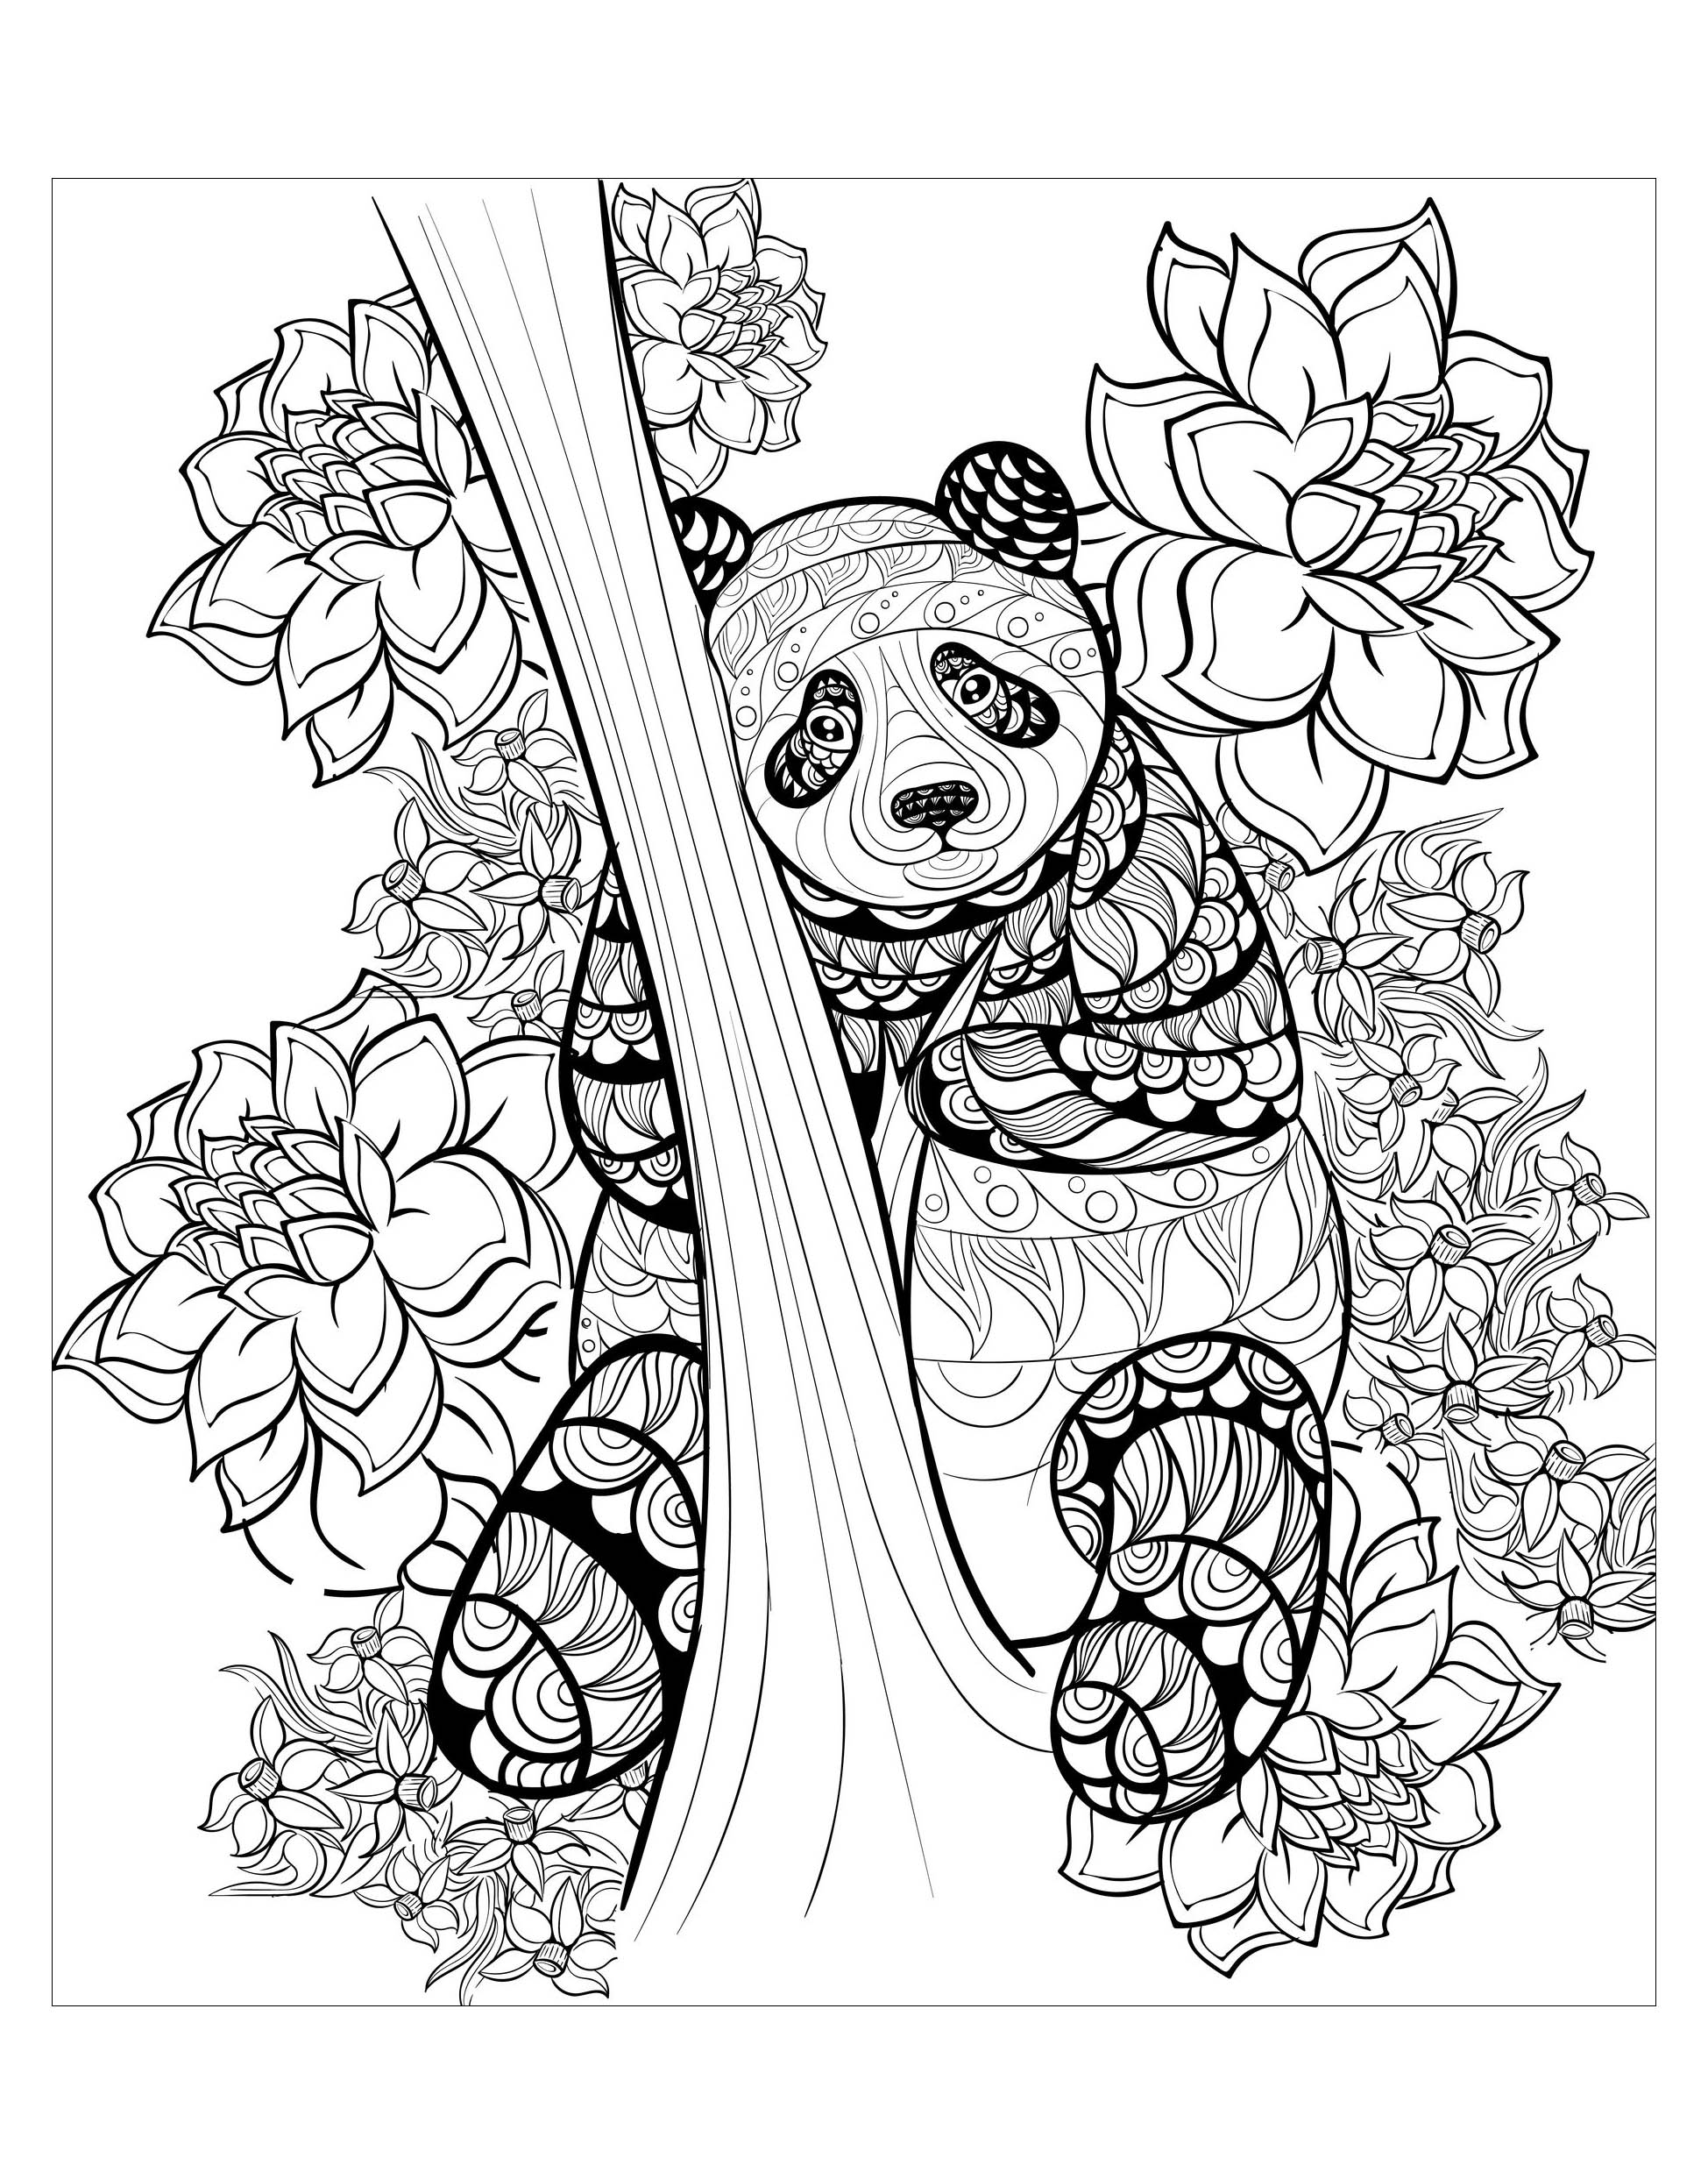 Página para colorir panda para crianças